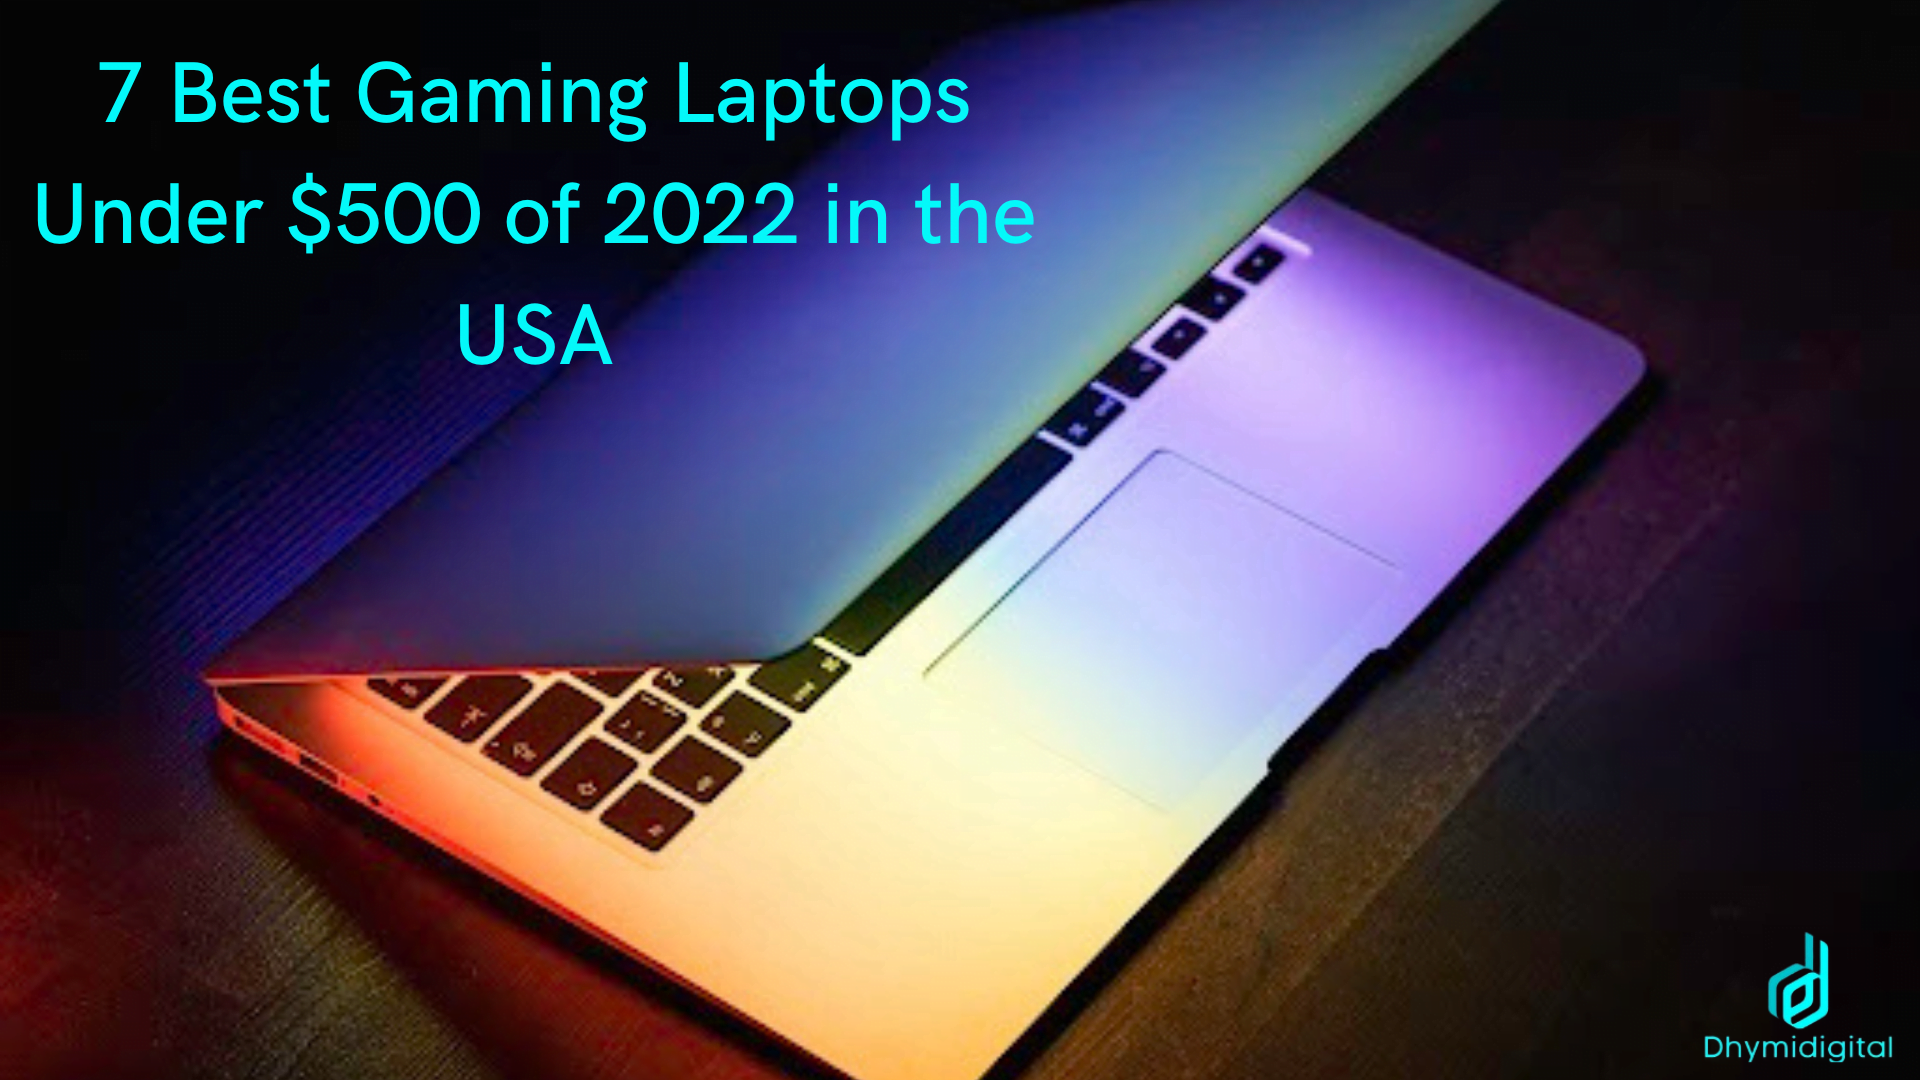 gaming laptops